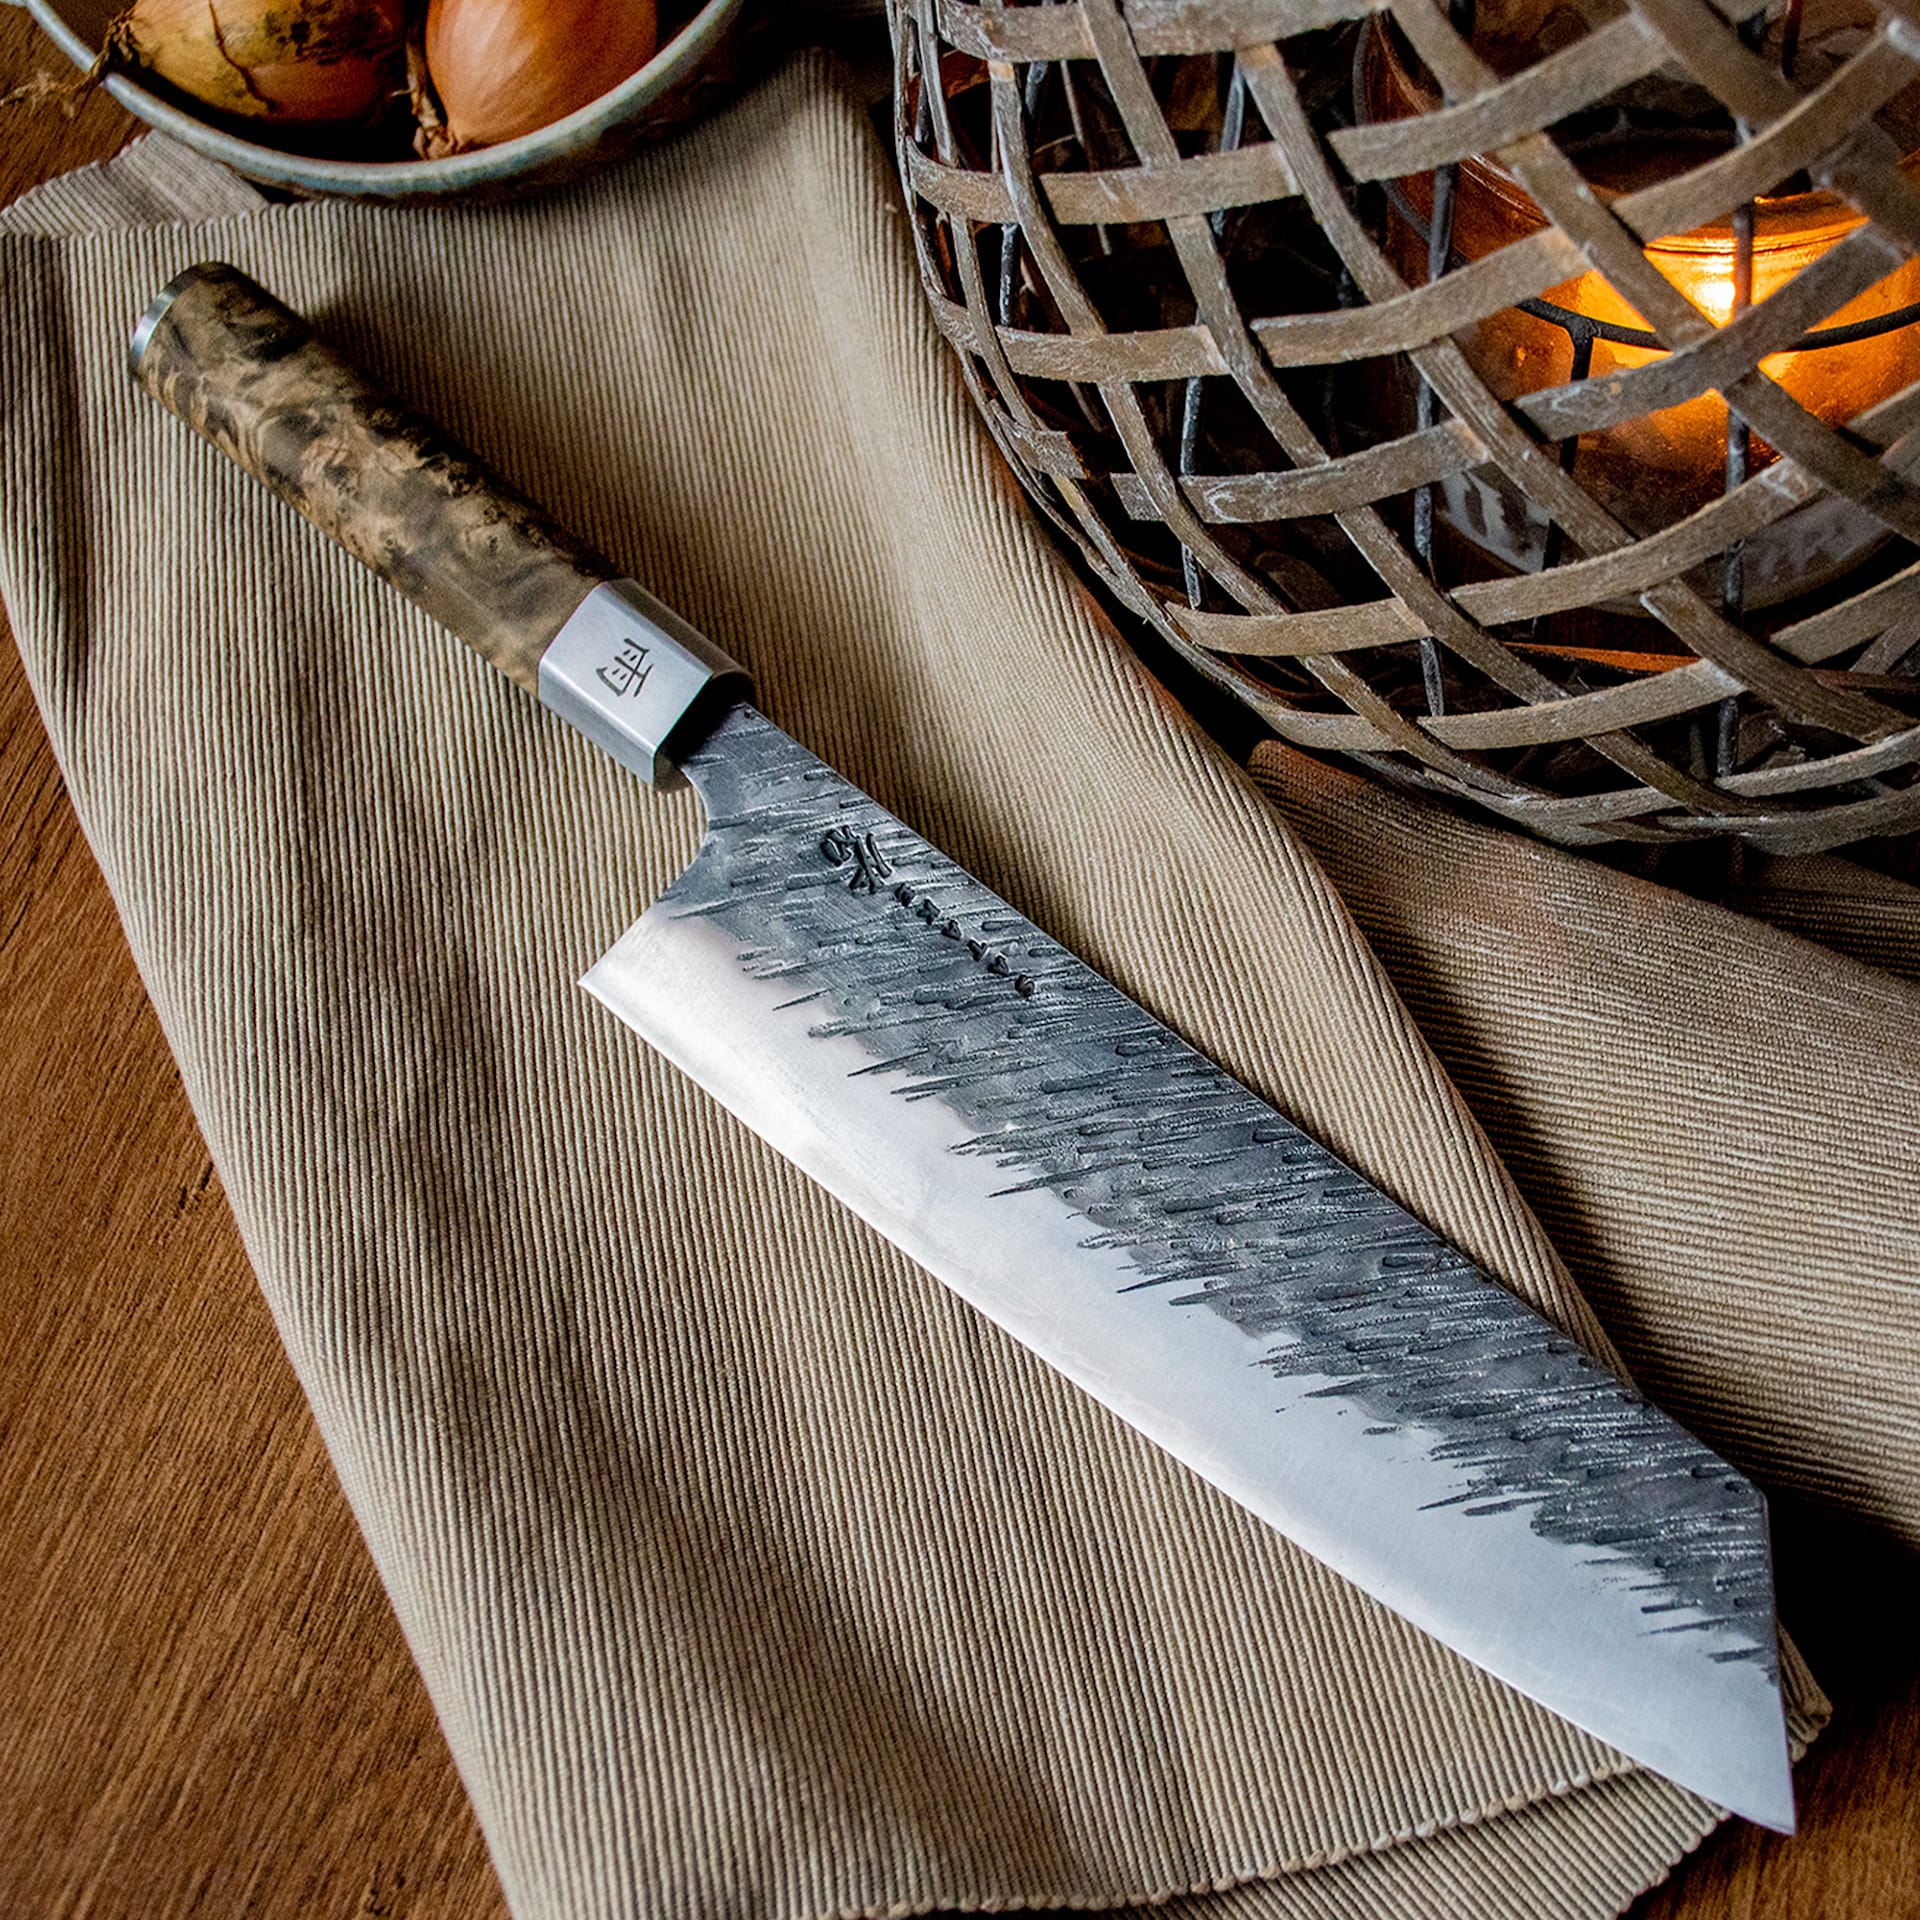 Satake Ame - Kiritsuke, Chef's knife 23 cm - Satake - NO GA